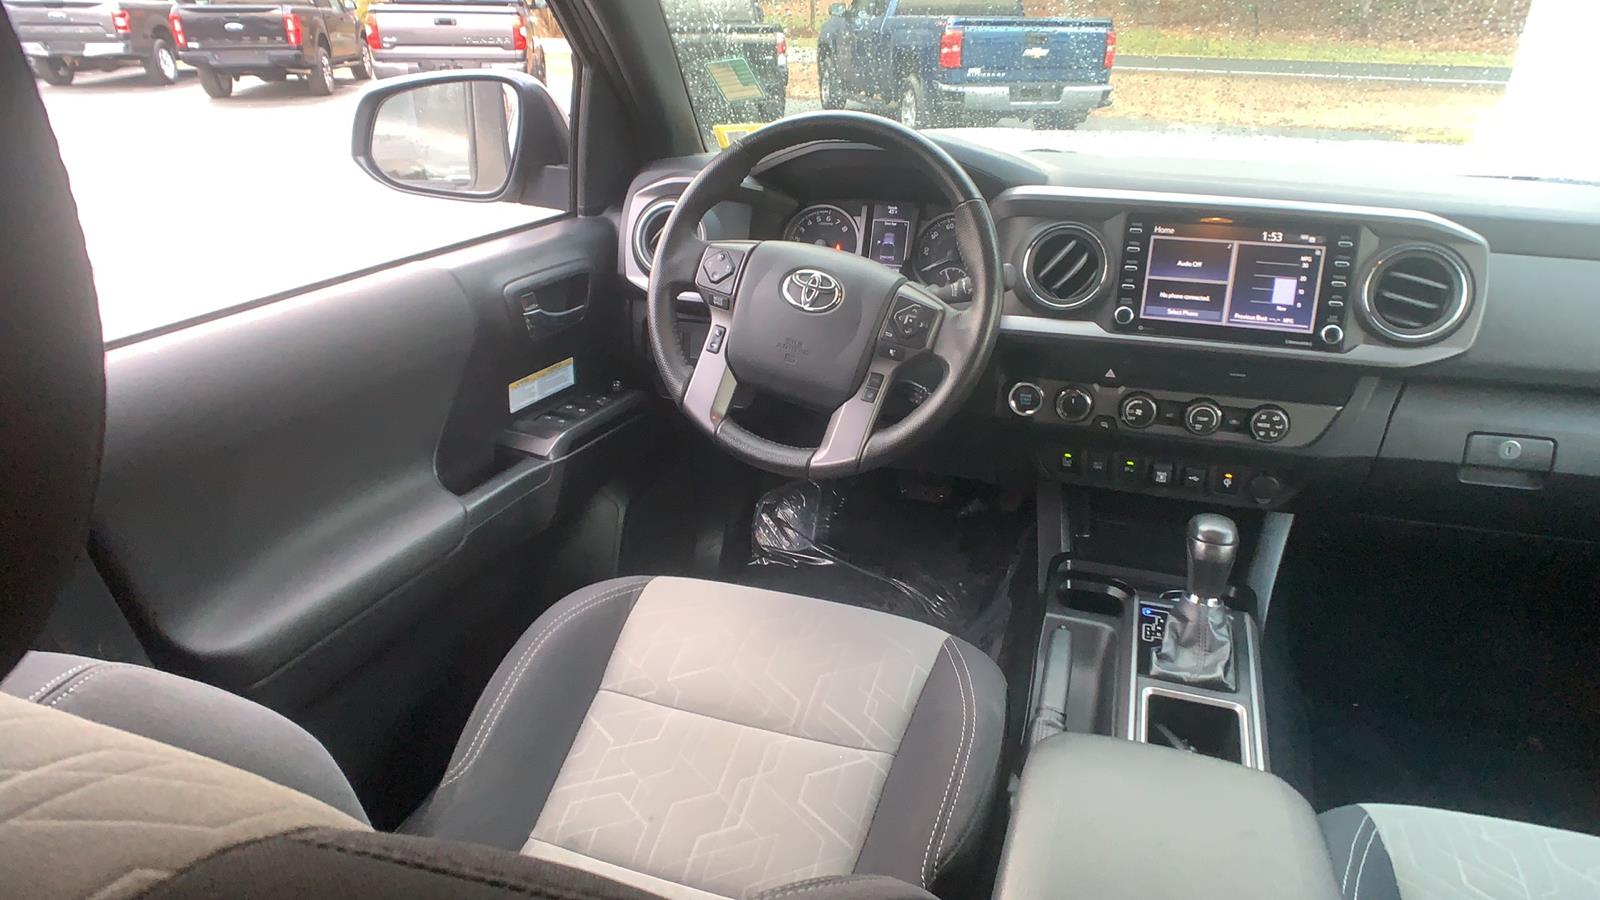 2020 Toyota Tacoma Double Cab